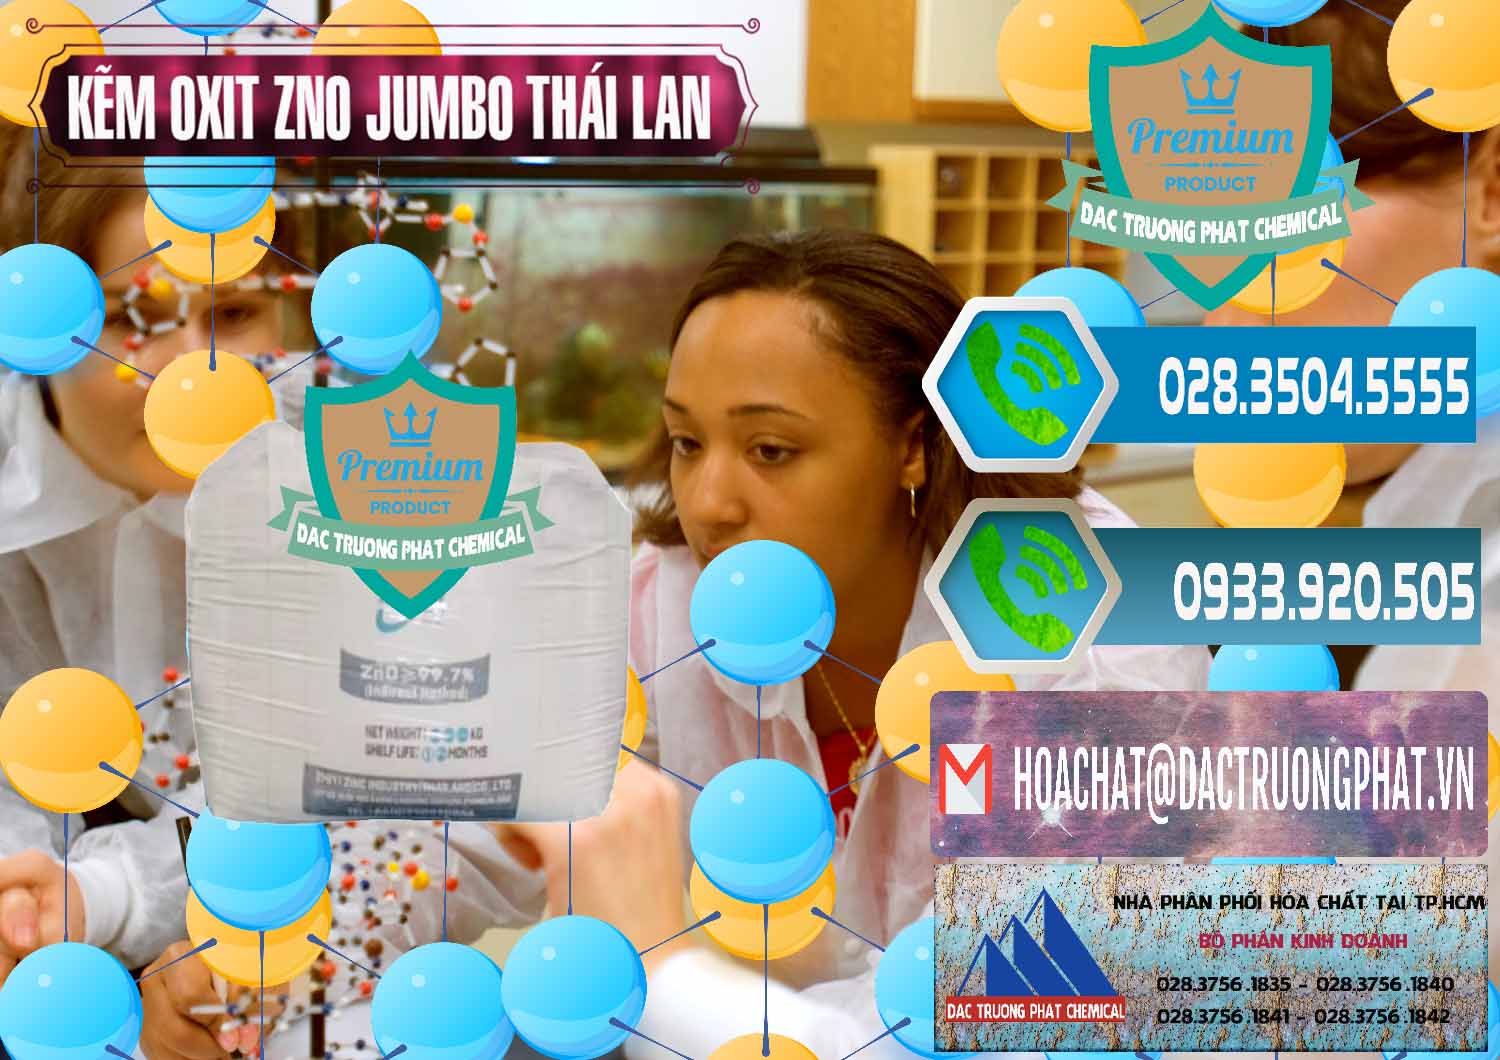 Nơi bán & phân phối Zinc Oxide - Bột Kẽm Oxit ZNO Jumbo Bành Thái Lan Thailand - 0370 - Công ty cung ứng - phân phối hóa chất tại TP.HCM - congtyhoachat.net